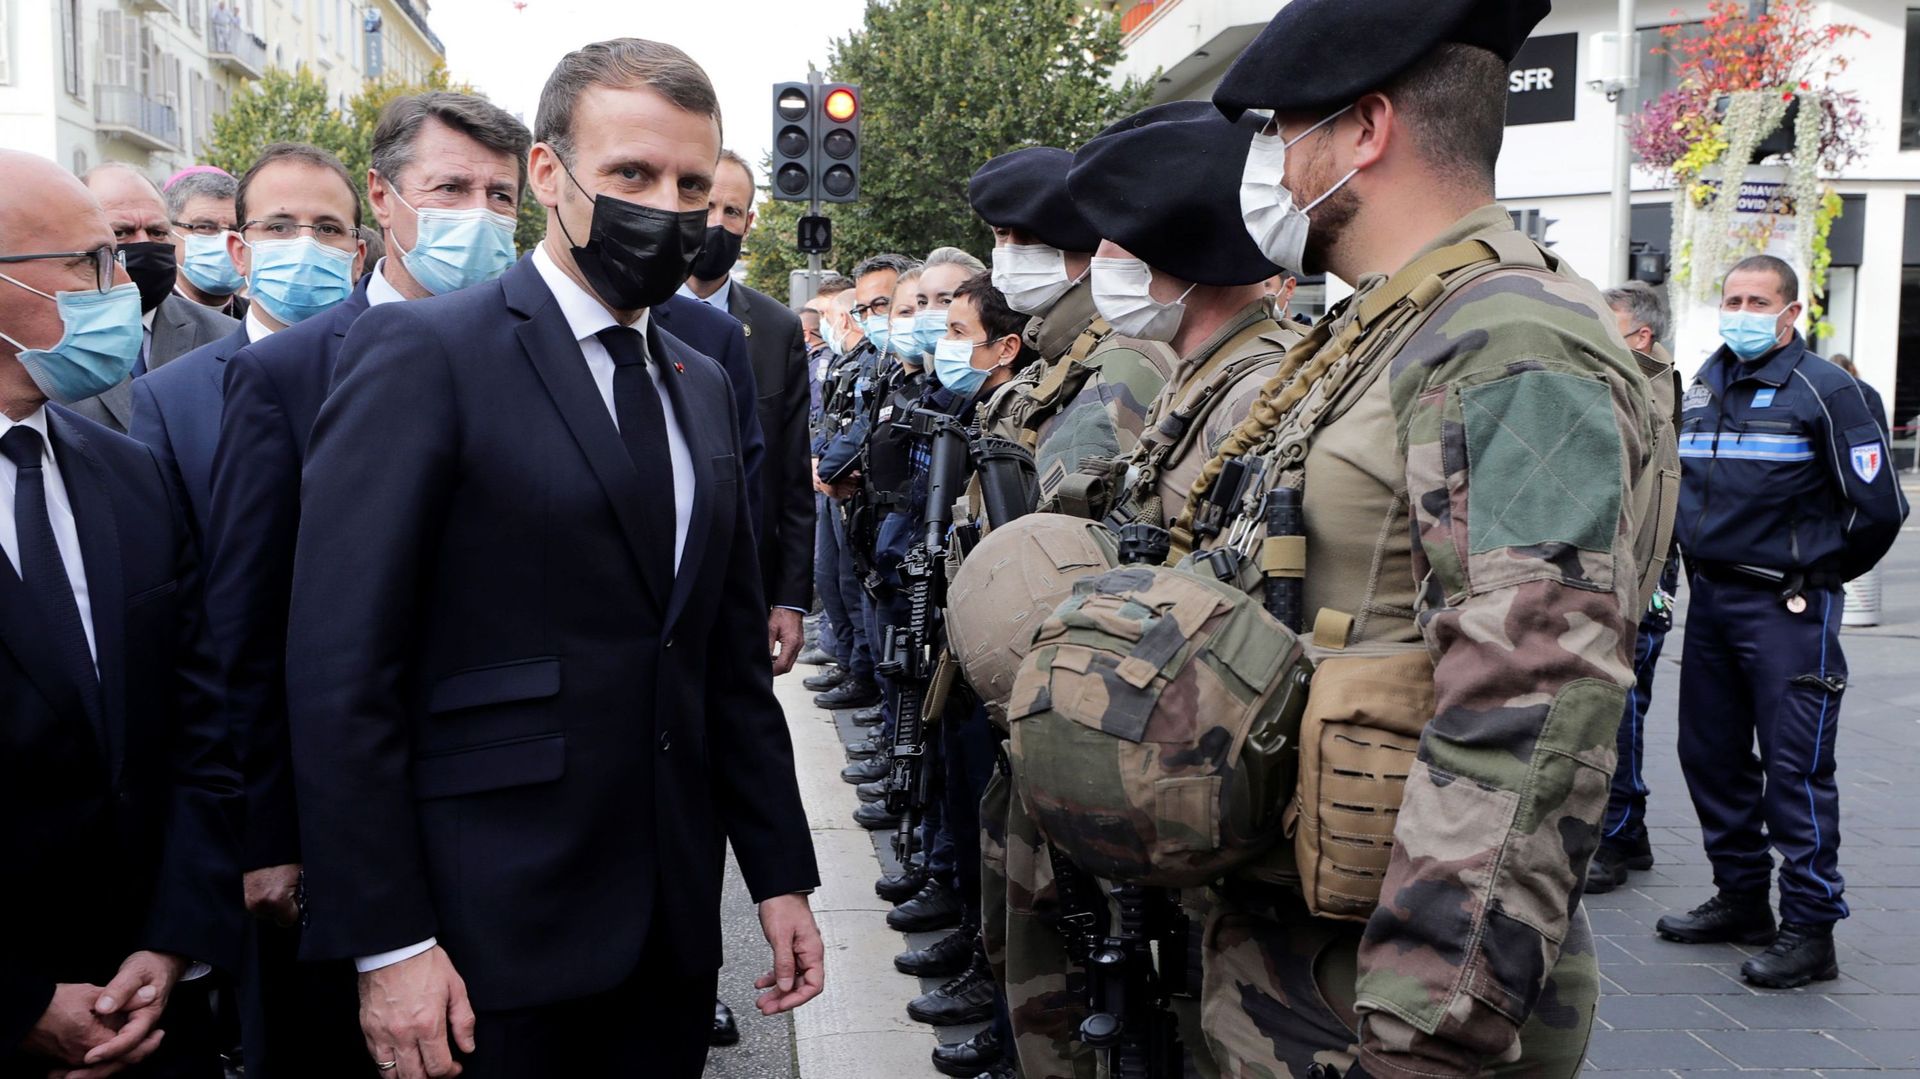 Suite à l'attaque à Nice, Macron dénonce l'attaque et renforce la sécurité au "niveau attentat"